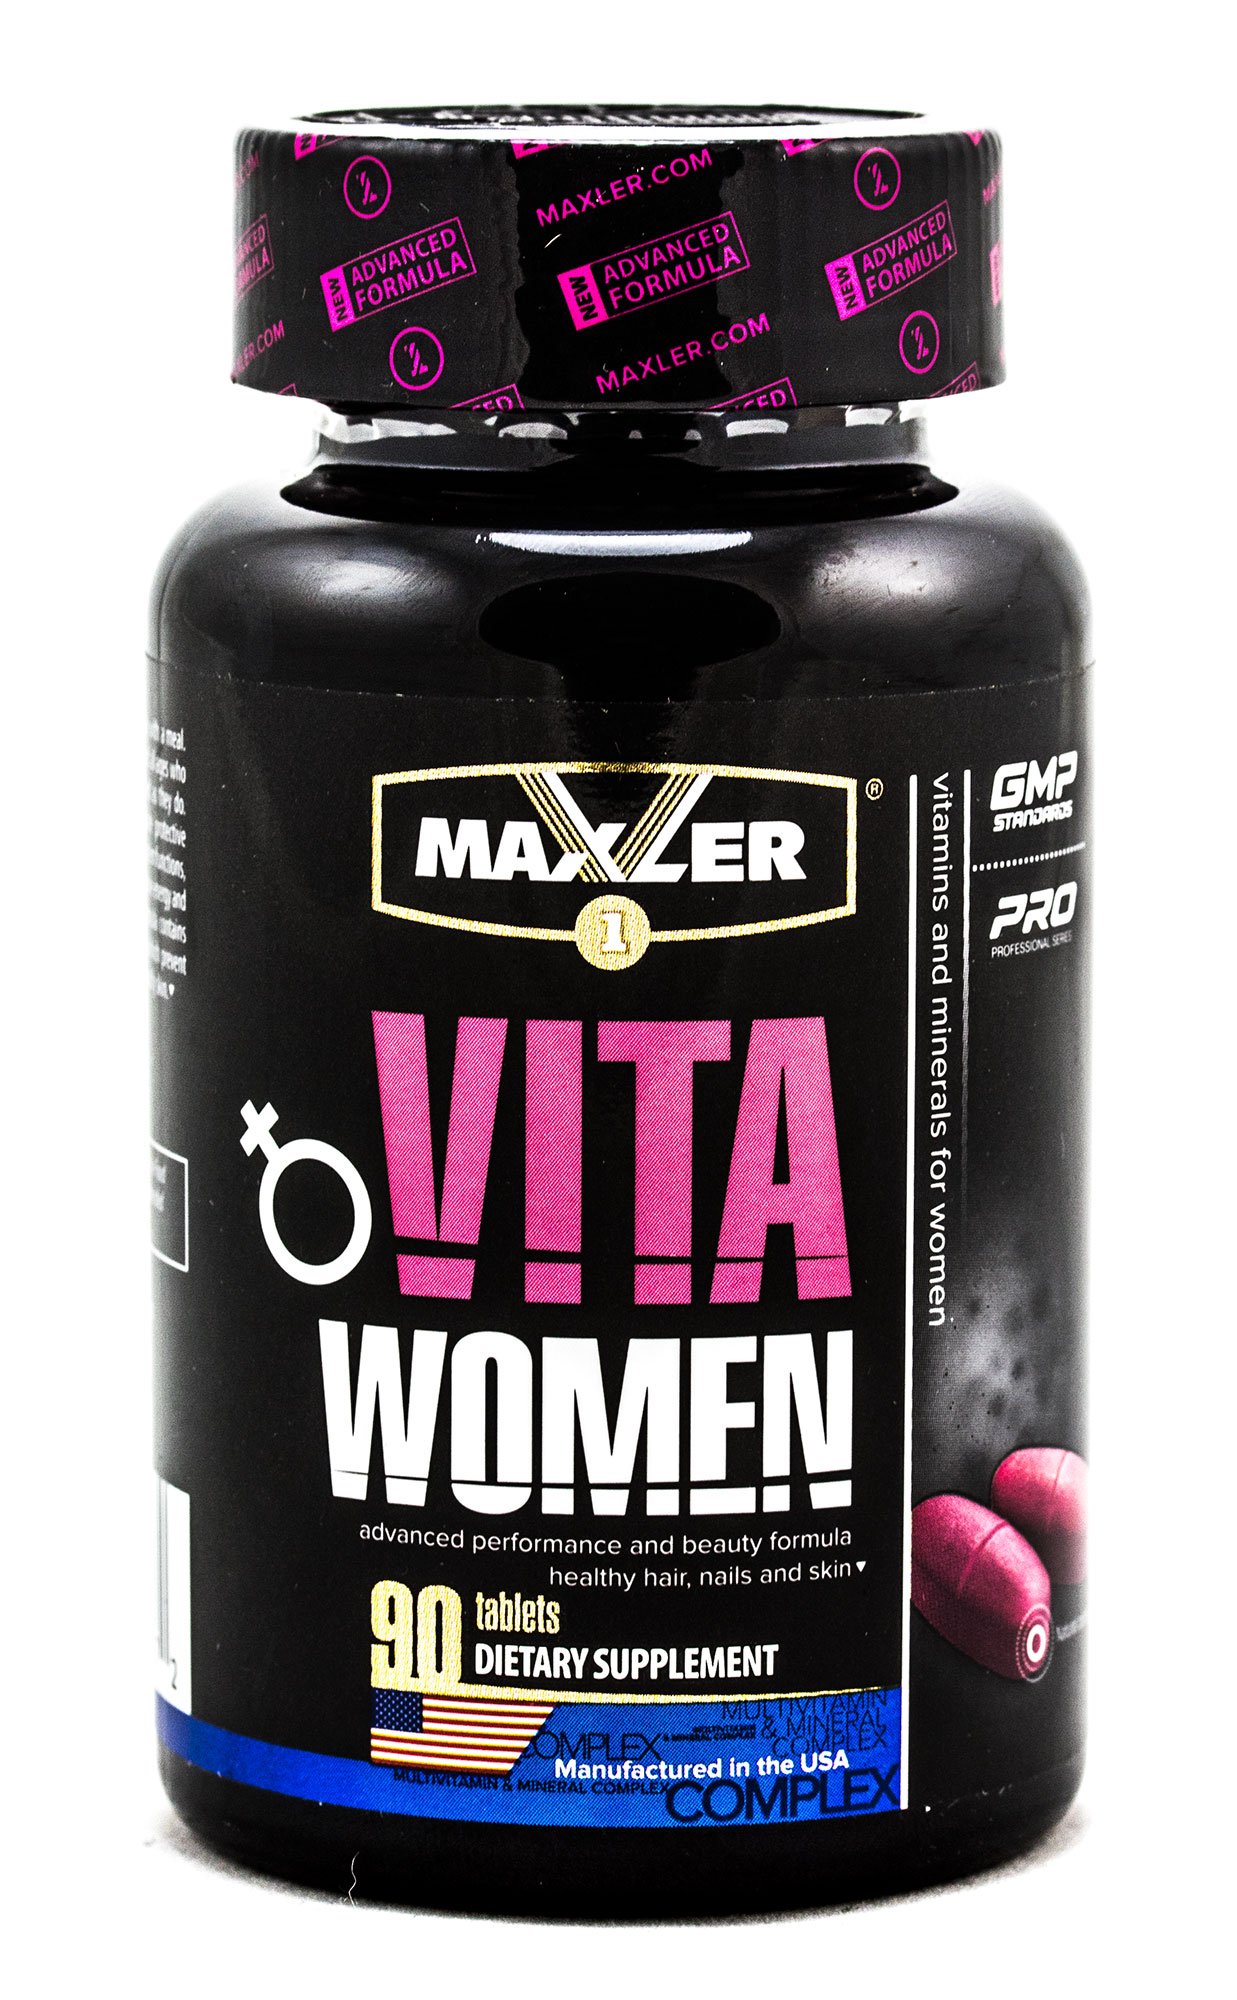 Vita women от maxler: как принимать, состав и отзывы